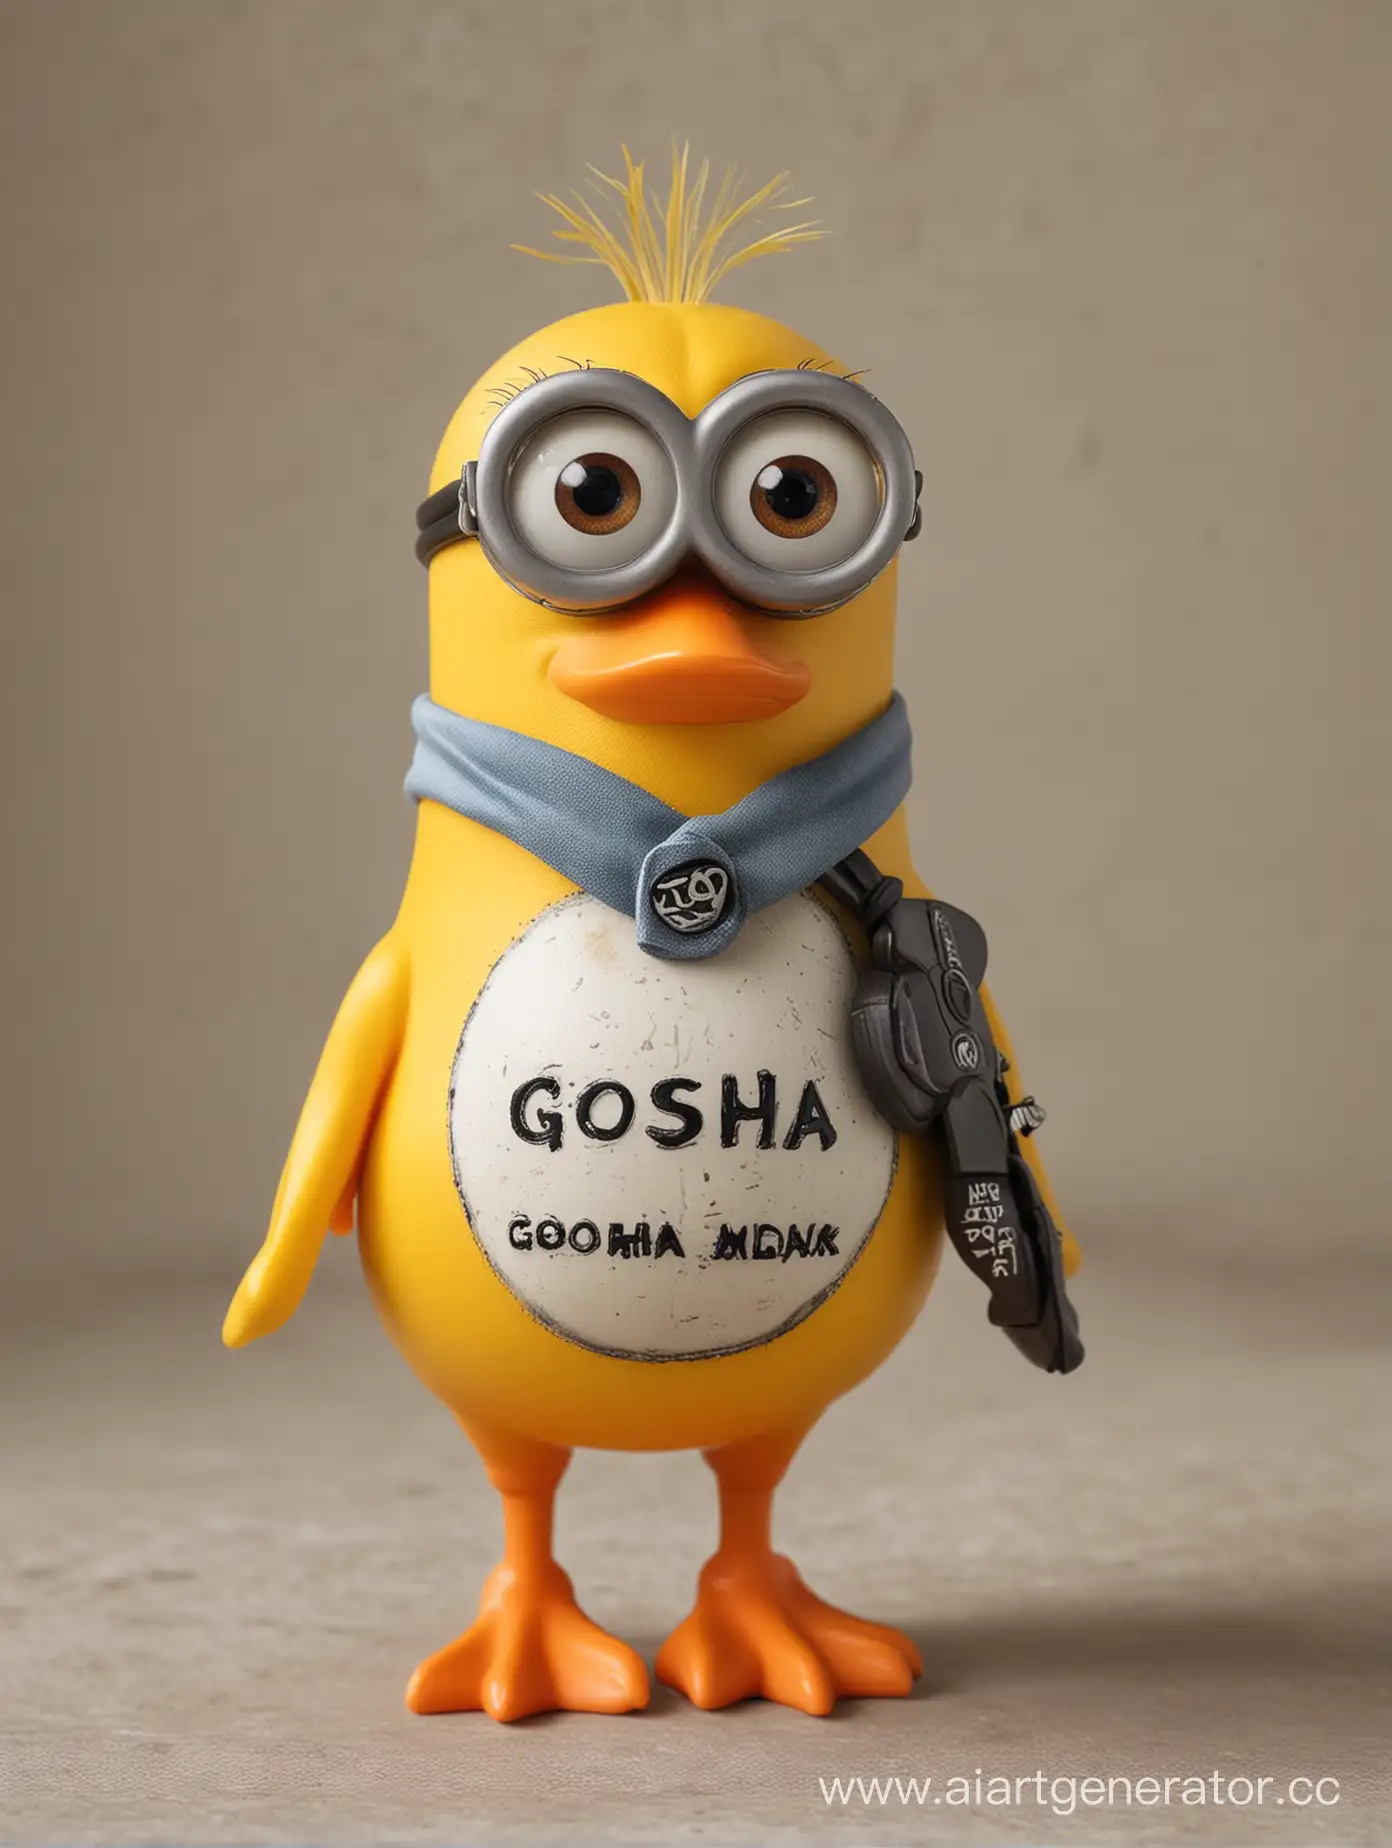 Cute-Minion-Duck-with-Gosha-Inscription-on-Chest